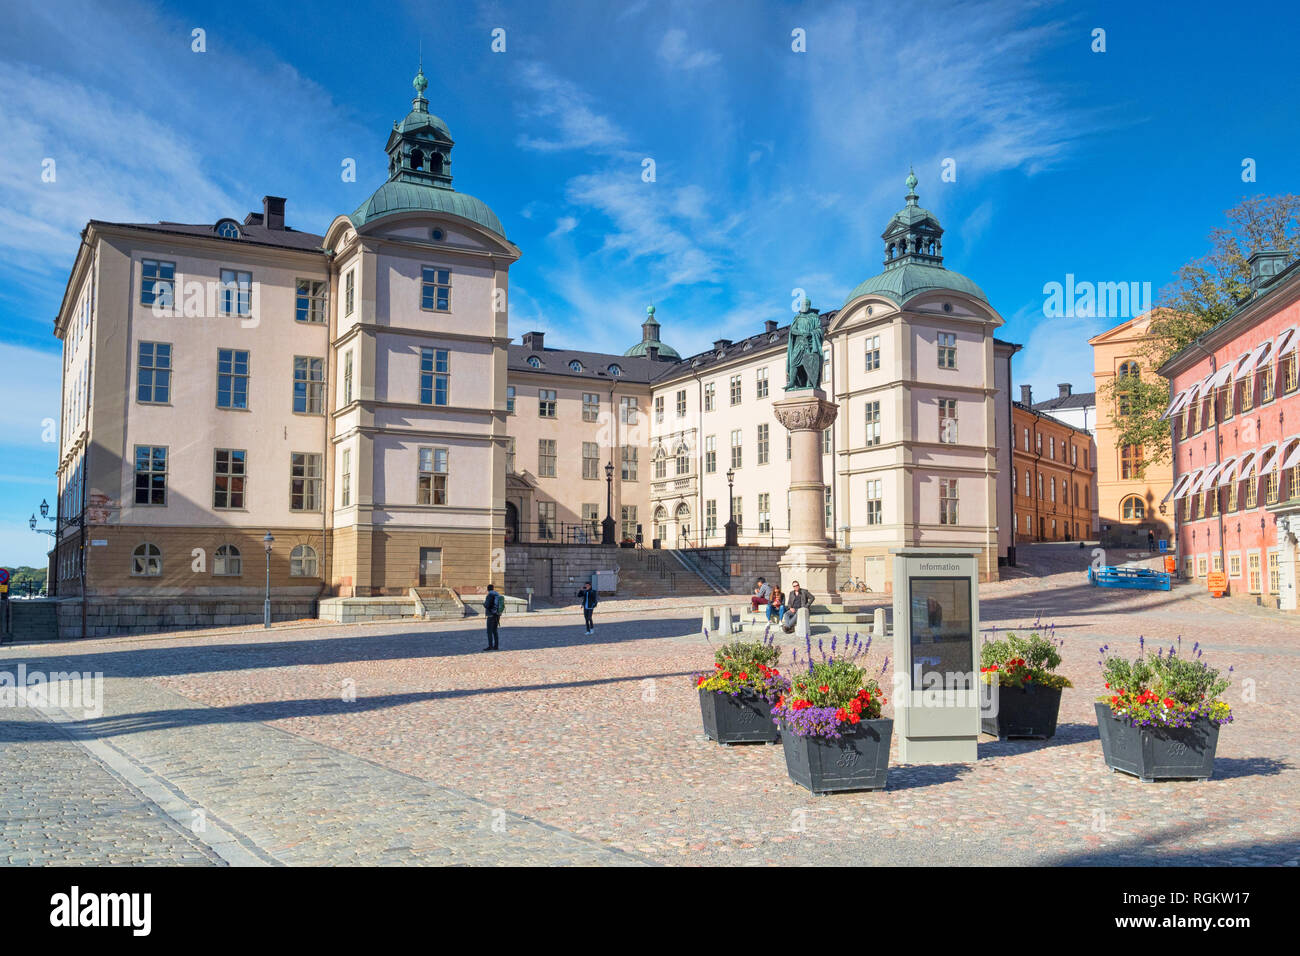 16. September 2018: Stockholm, Schweden - Palast von Wrangel, in dem das Berufungsgericht, Insel Riddarholmen. Die Statue von Birger Jarl... Stockfoto